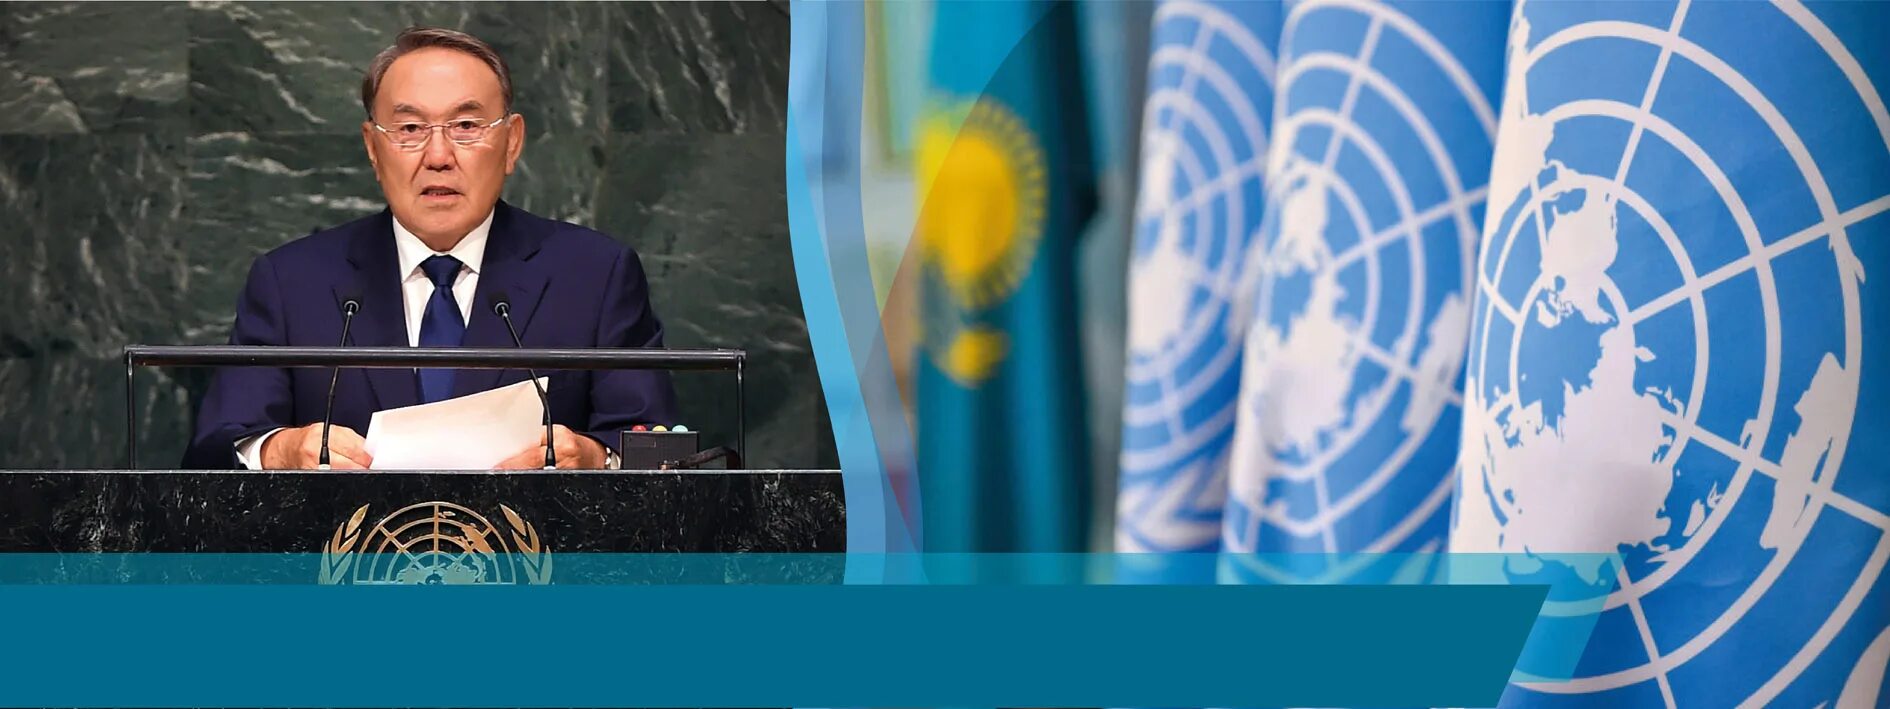 Оон 2018. Назарбаев 1992. Казахстан в Совете безопасности ООН. Саммит тысячелетия ООН 2000. Председатель ООН 2000.